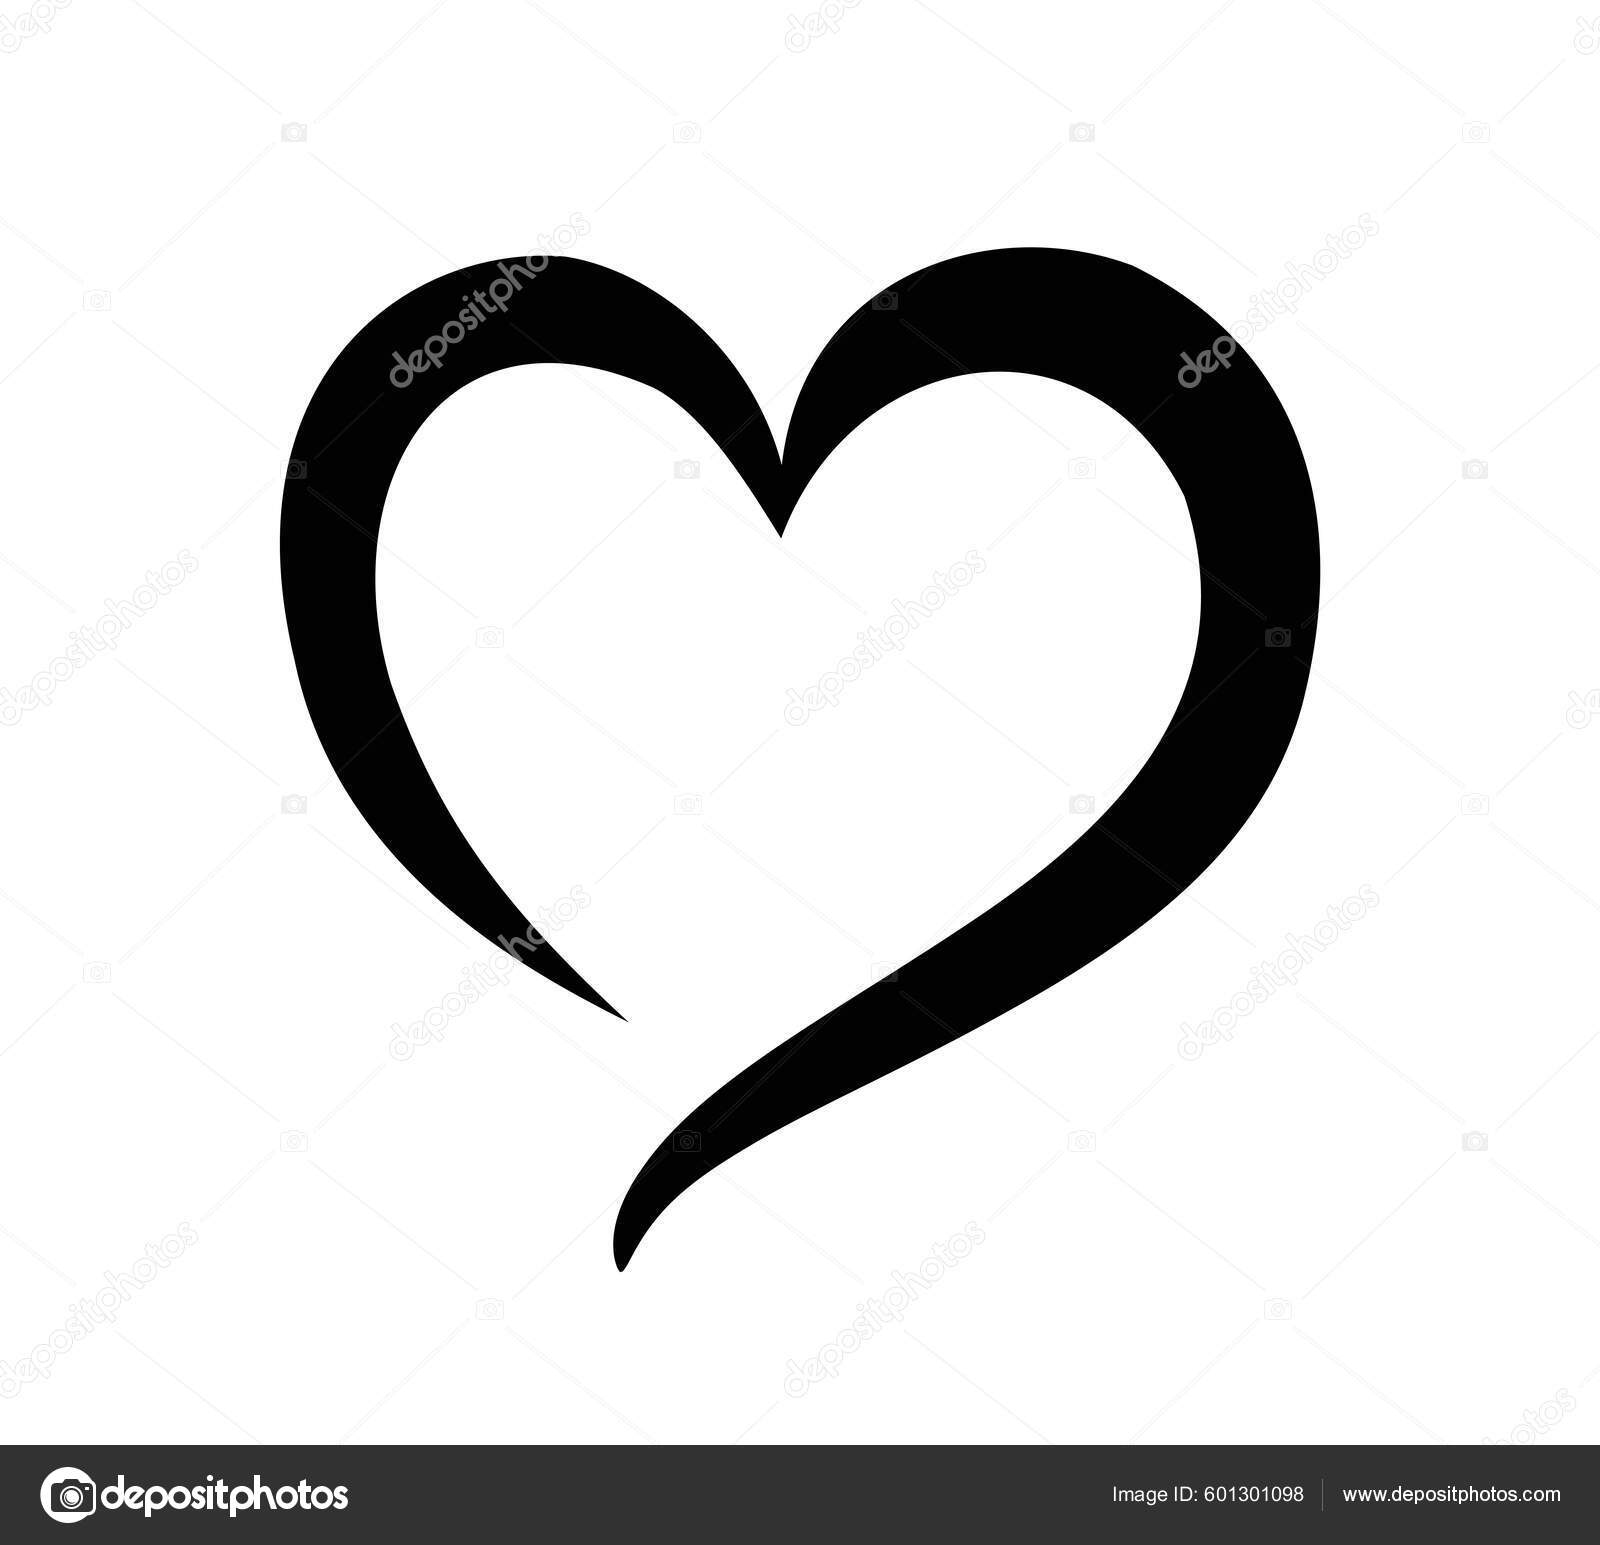 https://st.depositphotos.com/18644982/60130/v/1600/depositphotos_601301098-stock-illustration-black-heart-shape-stencil-outline.jpg